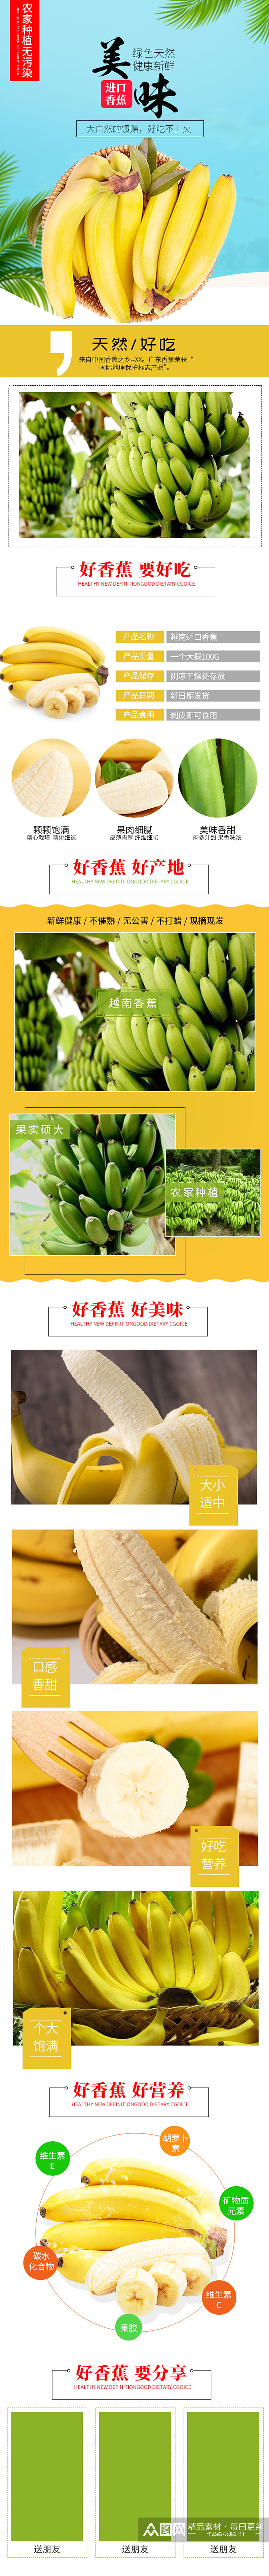 淘宝小清新食品水果香蕉详情页模板素材